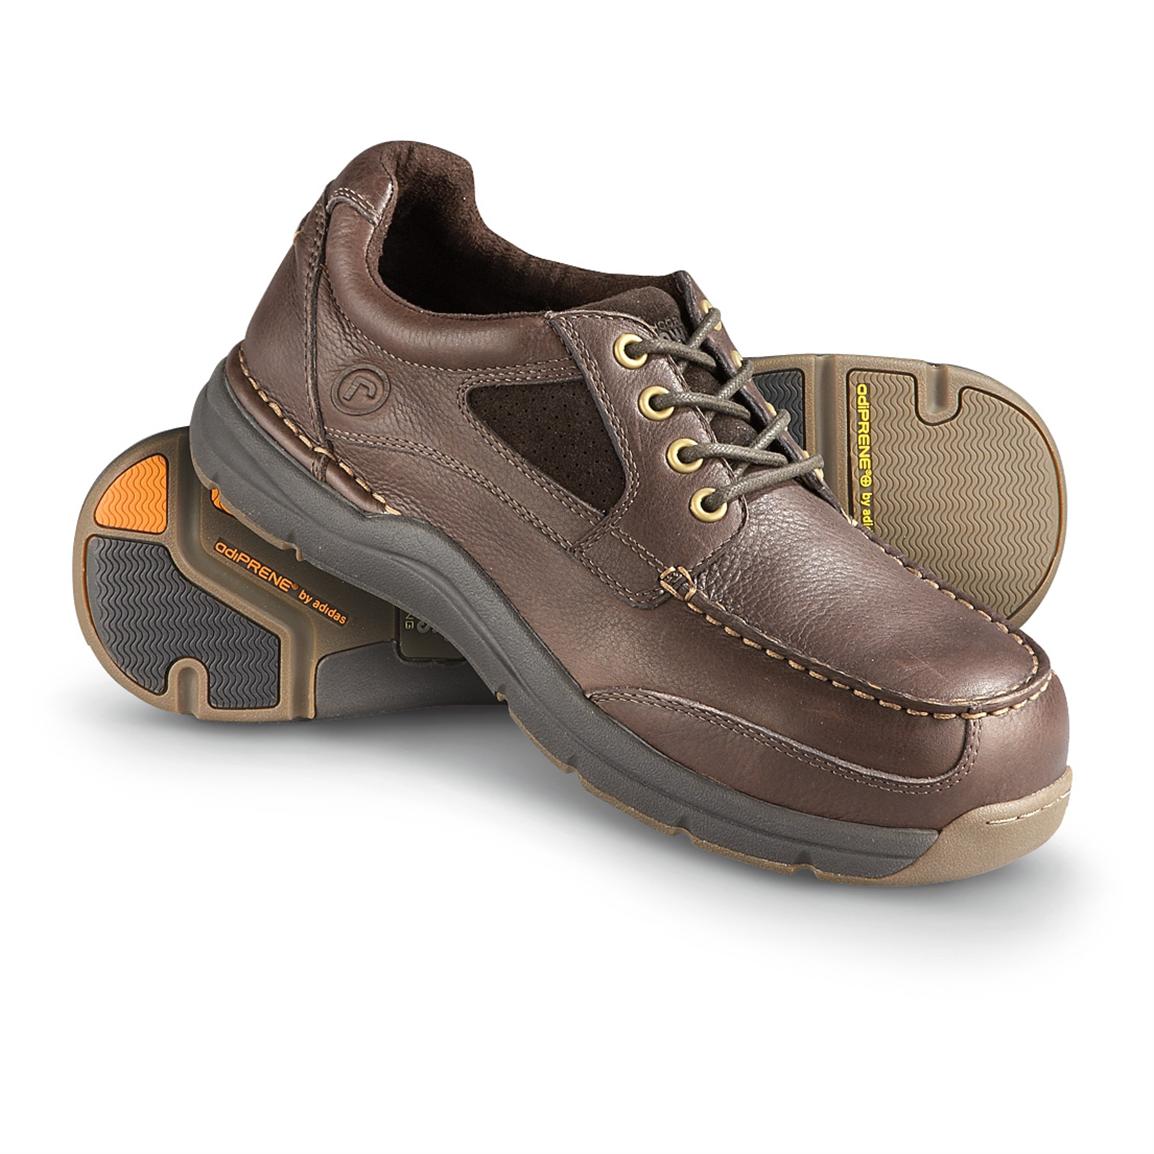 Men's Rockport Works Sea Master Work Shoes, Brown - 578615, Boat ...